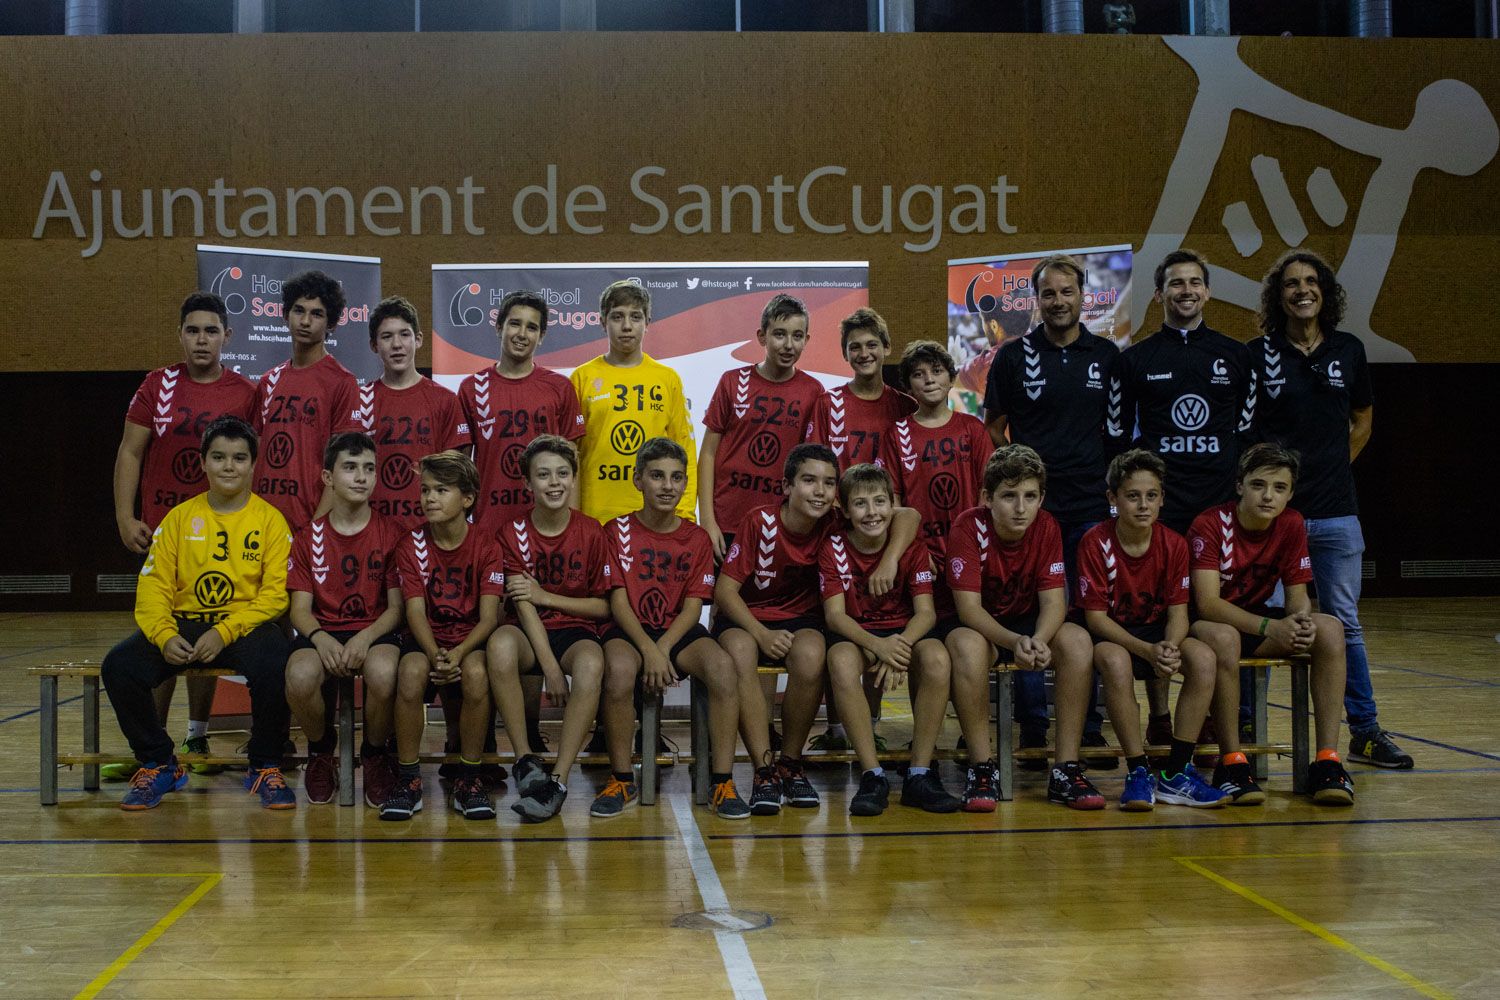 Presentació d'equips Club Handbol Sant Cugat. Foto: Adrián Gómez